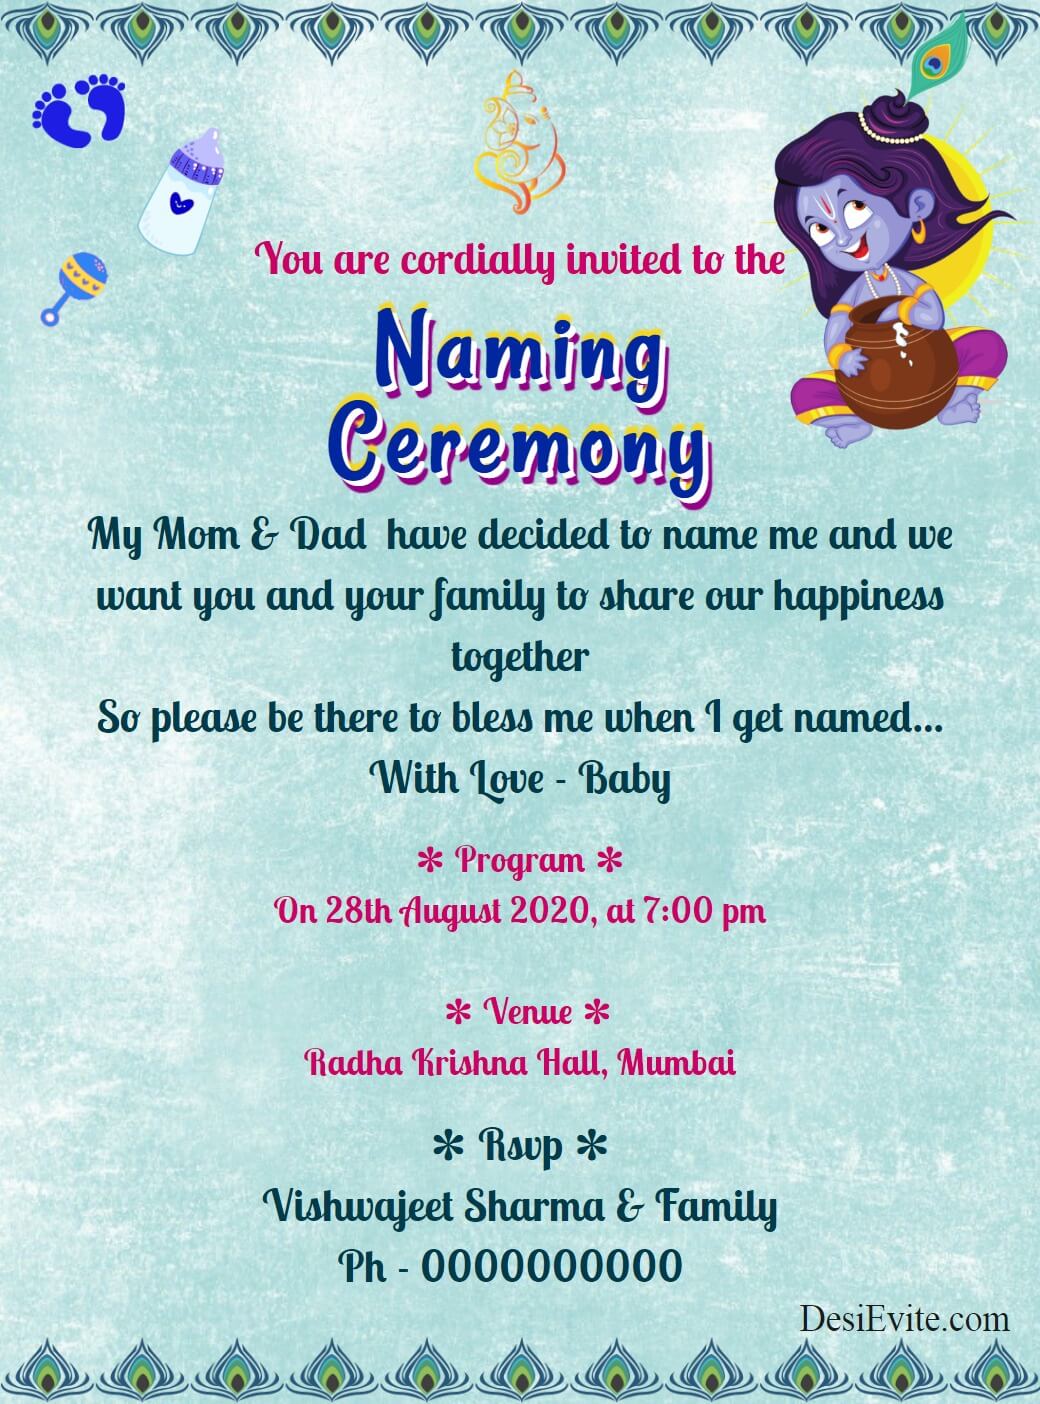 krishna-theme-naming-ceremony-card